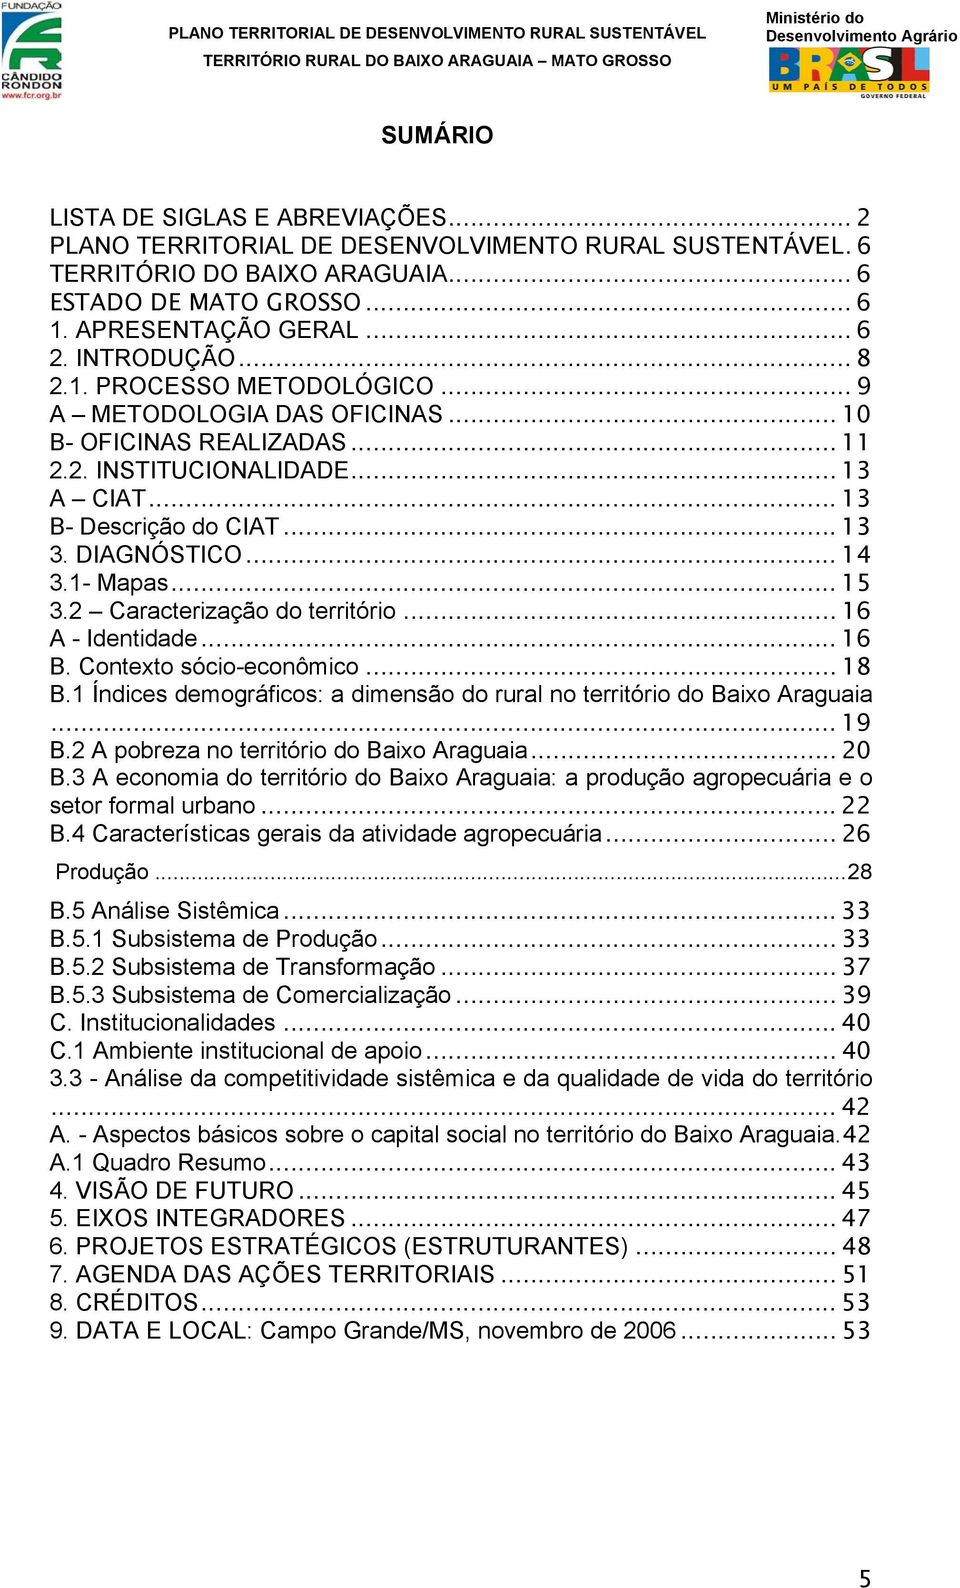 .. 14 3.1- Mapas... 15 3.2 Caracterização do território... 16 A - Identidade... 16 B. Contexto sócio-econômico... 18 B.1 Índices demográficos: a dimensão do rural no território do Baixo Araguaia.